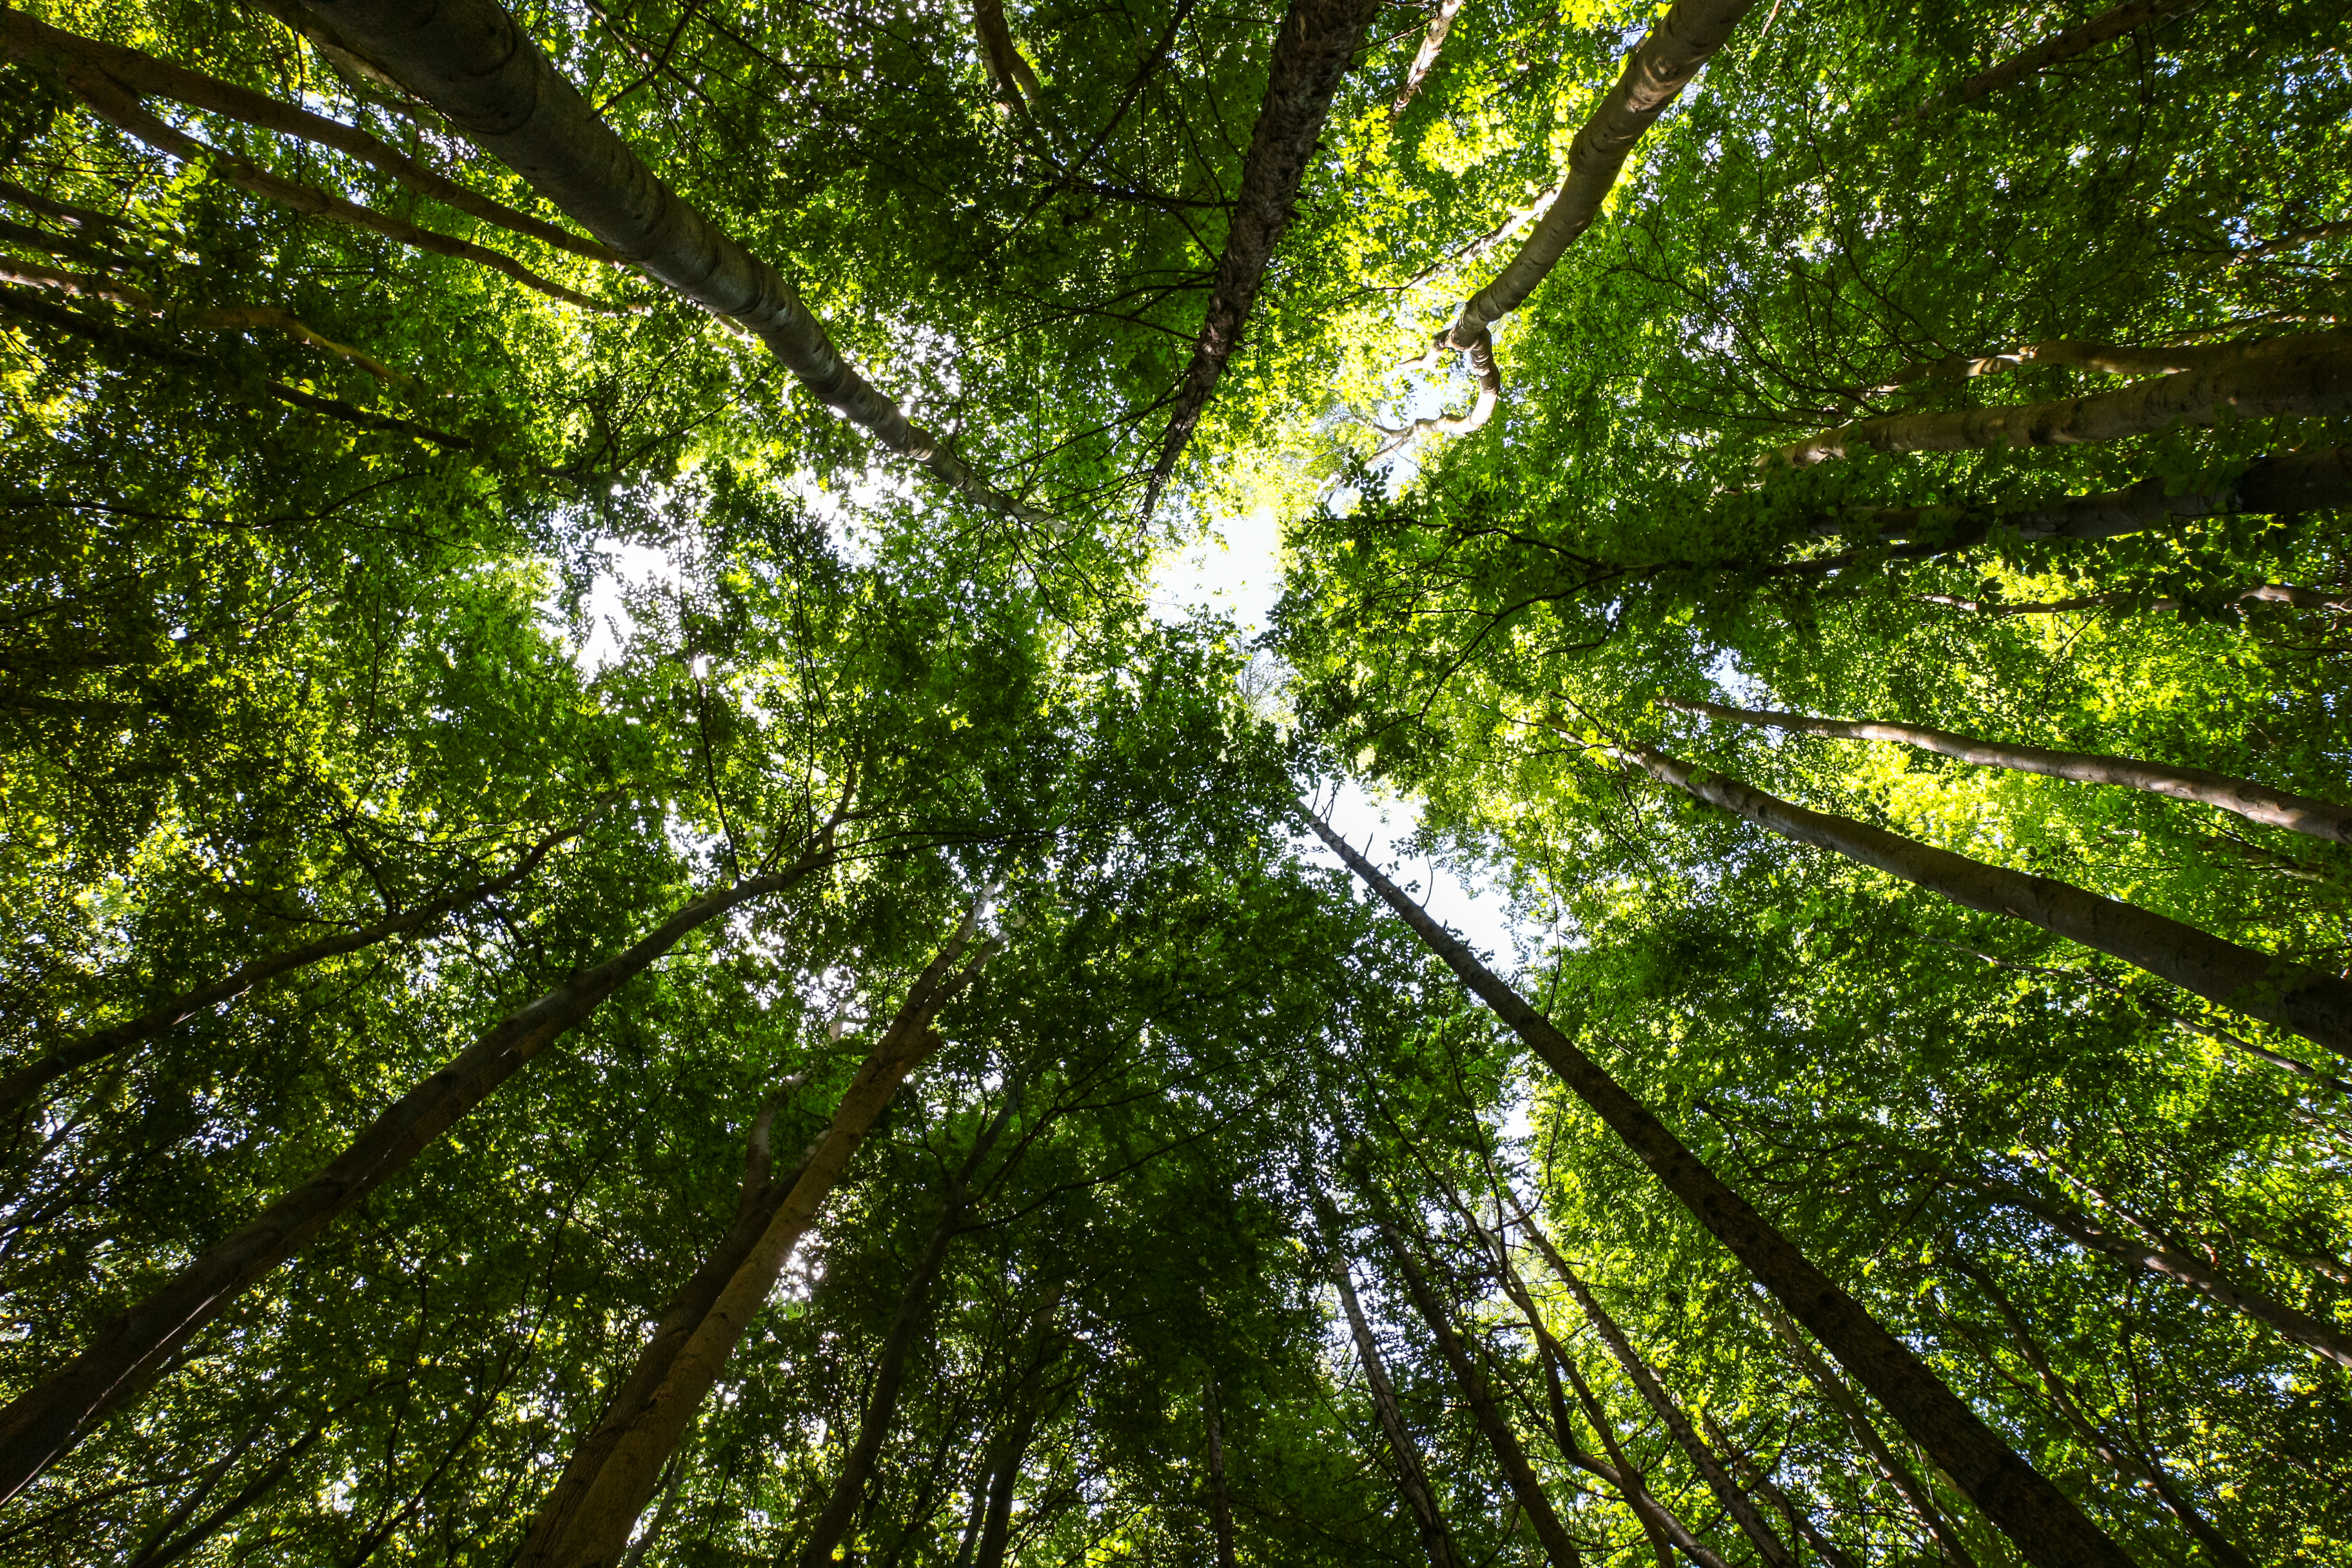 Raportul special 21/2021: Finanțarea din partea UE pentru biodiversitate și pentru schimbările climatice în pădurile din UE: rezultate pozitive, dar limitate